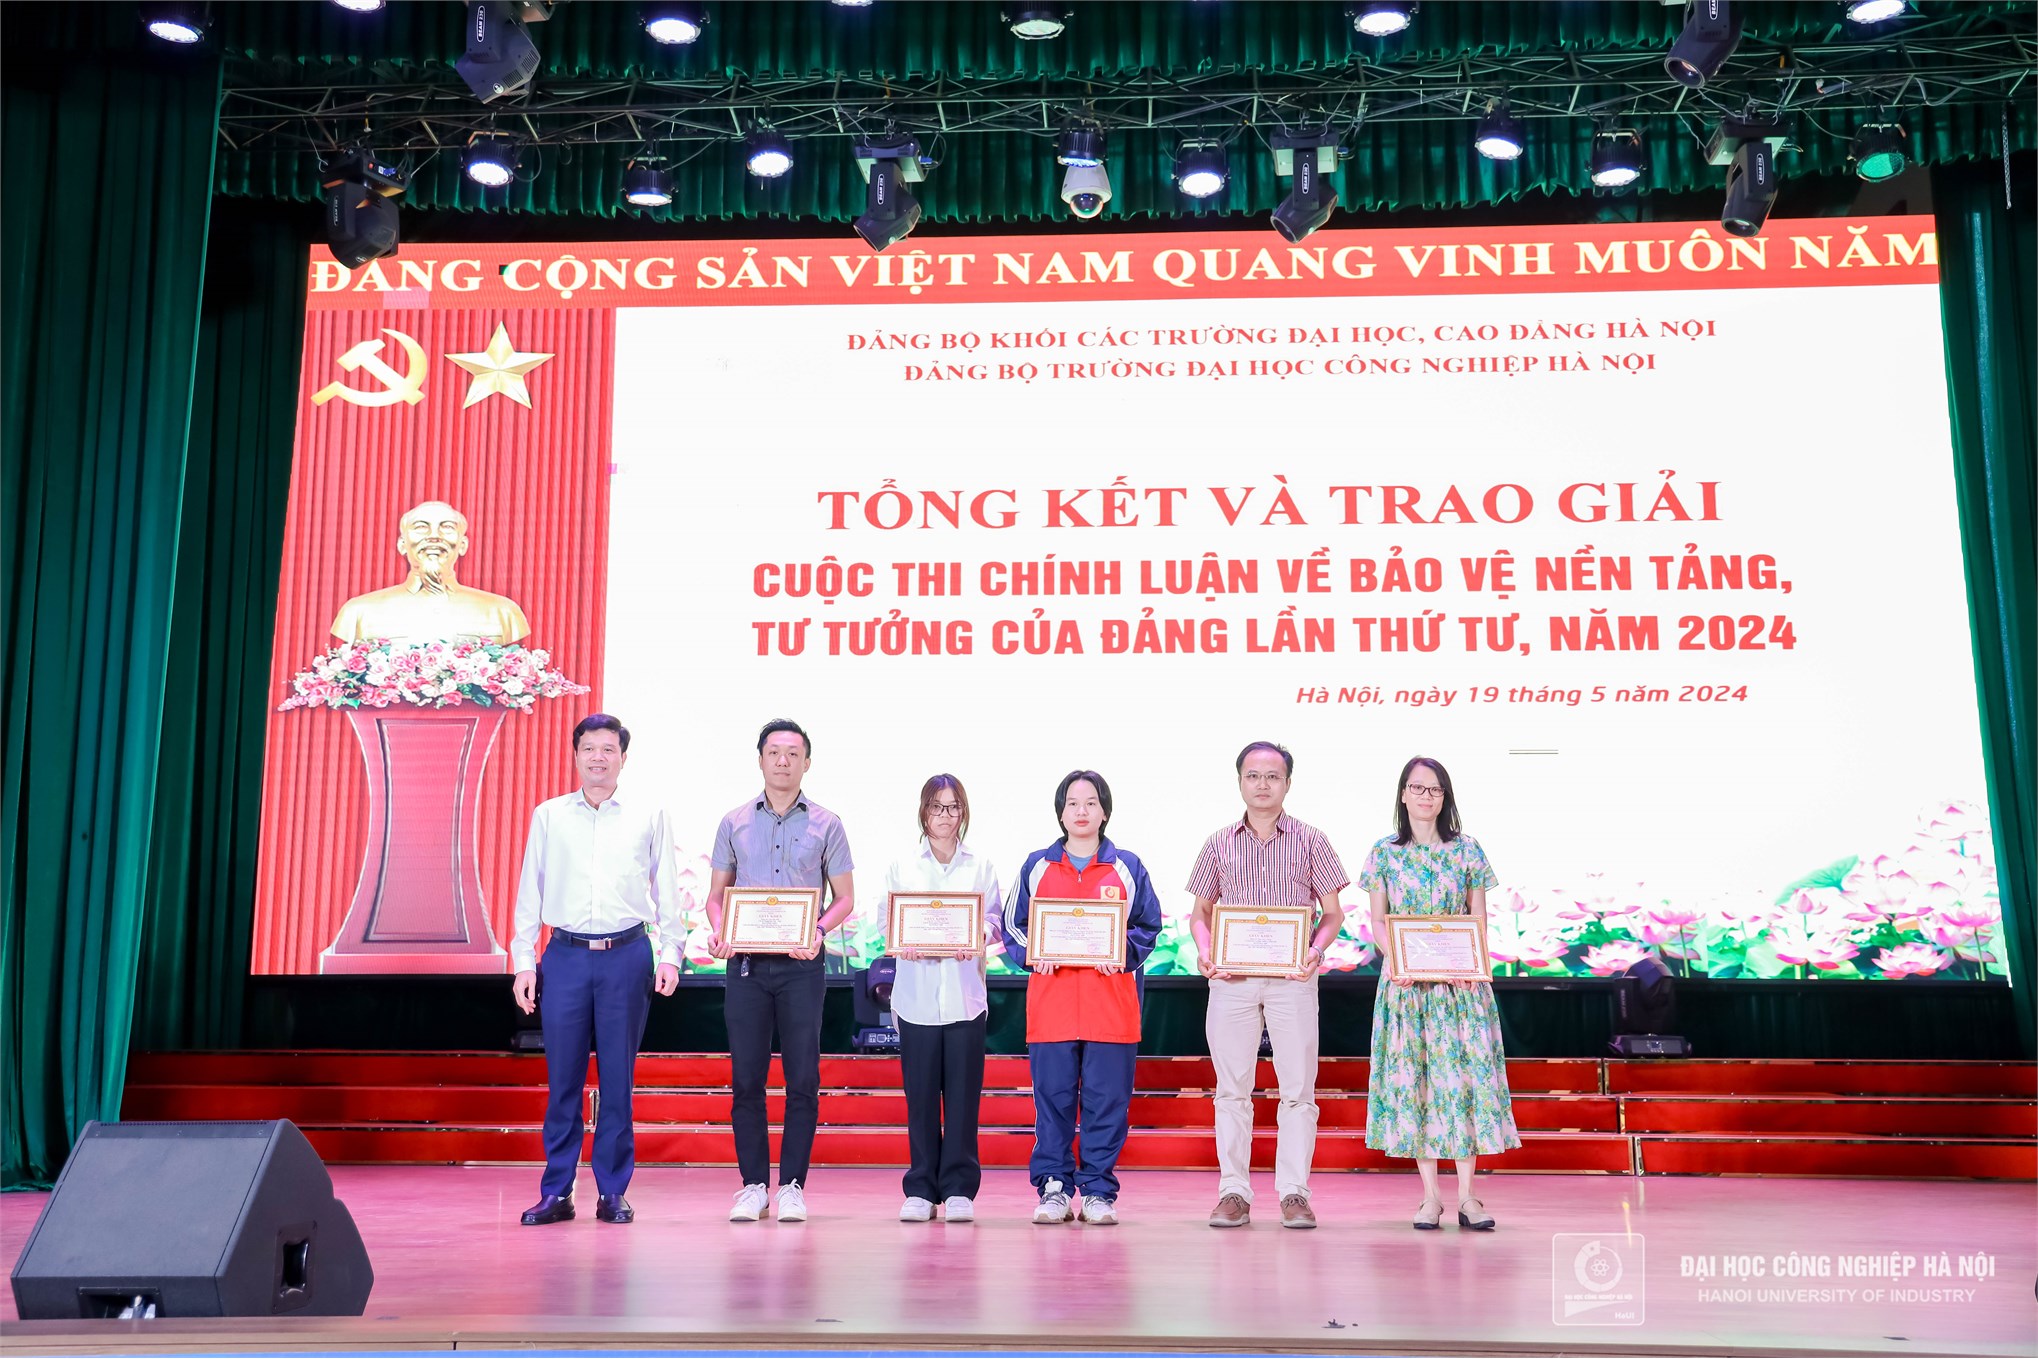 Kỷ niệm 134 năm ngày sinh Chủ tịch Hồ Chí Minh, Hội nghị thông tin thời sự quốc tế và trao giải cuộc thi bảo vệ nền tảng tư tưởng của Đảng năm 2024